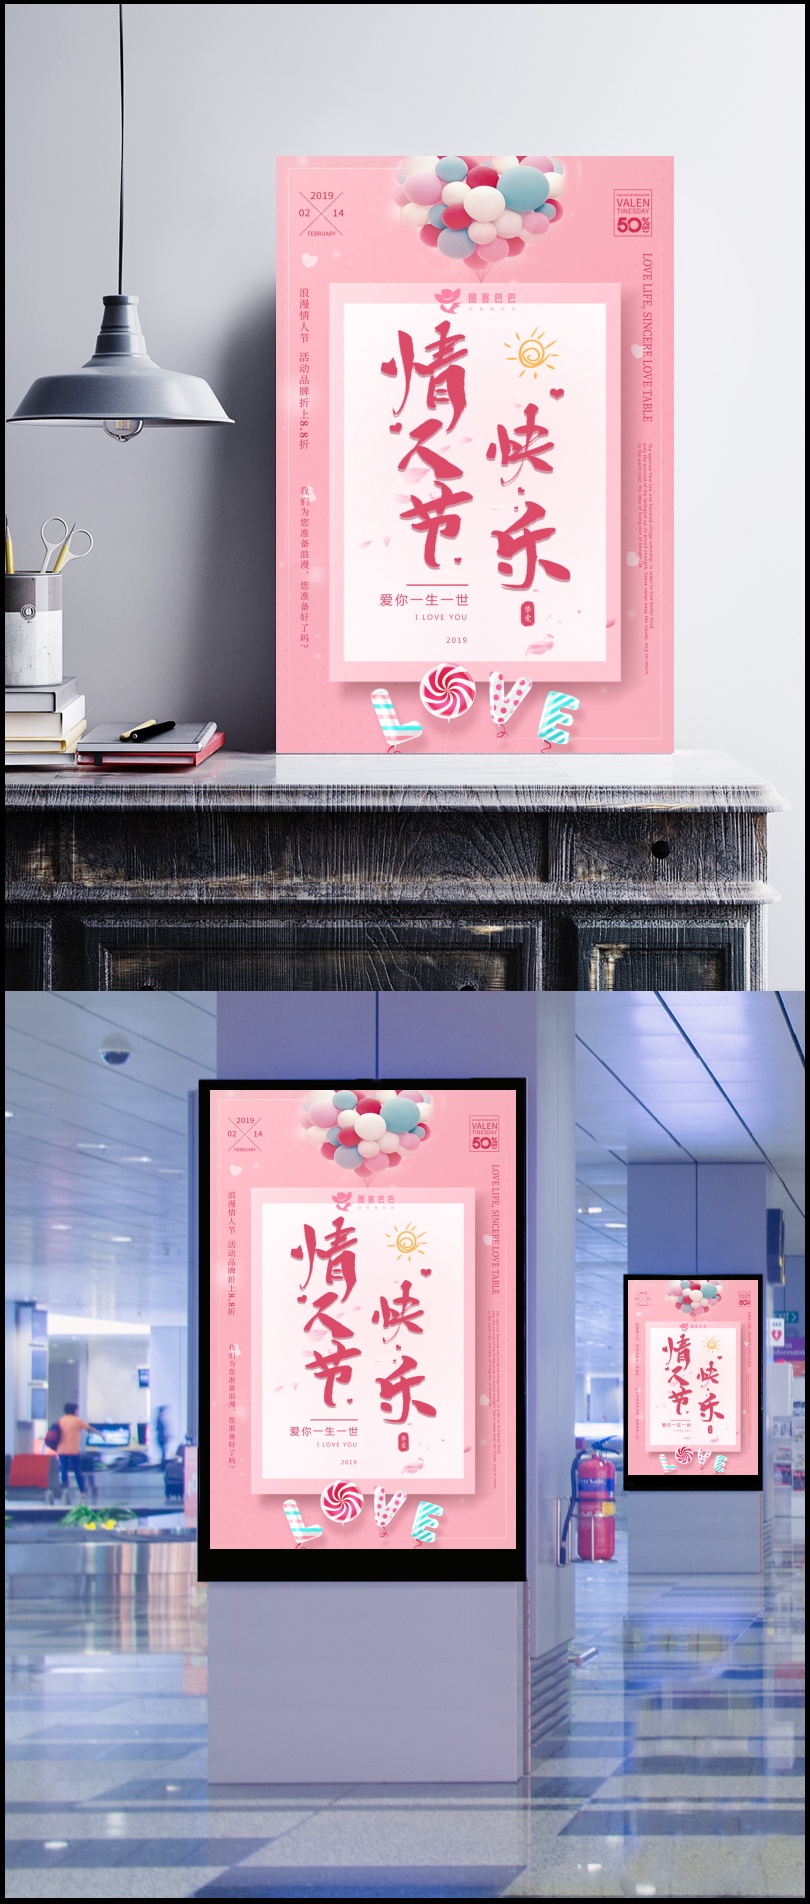 粉色唯美浪漫情人节快乐节日海报设计